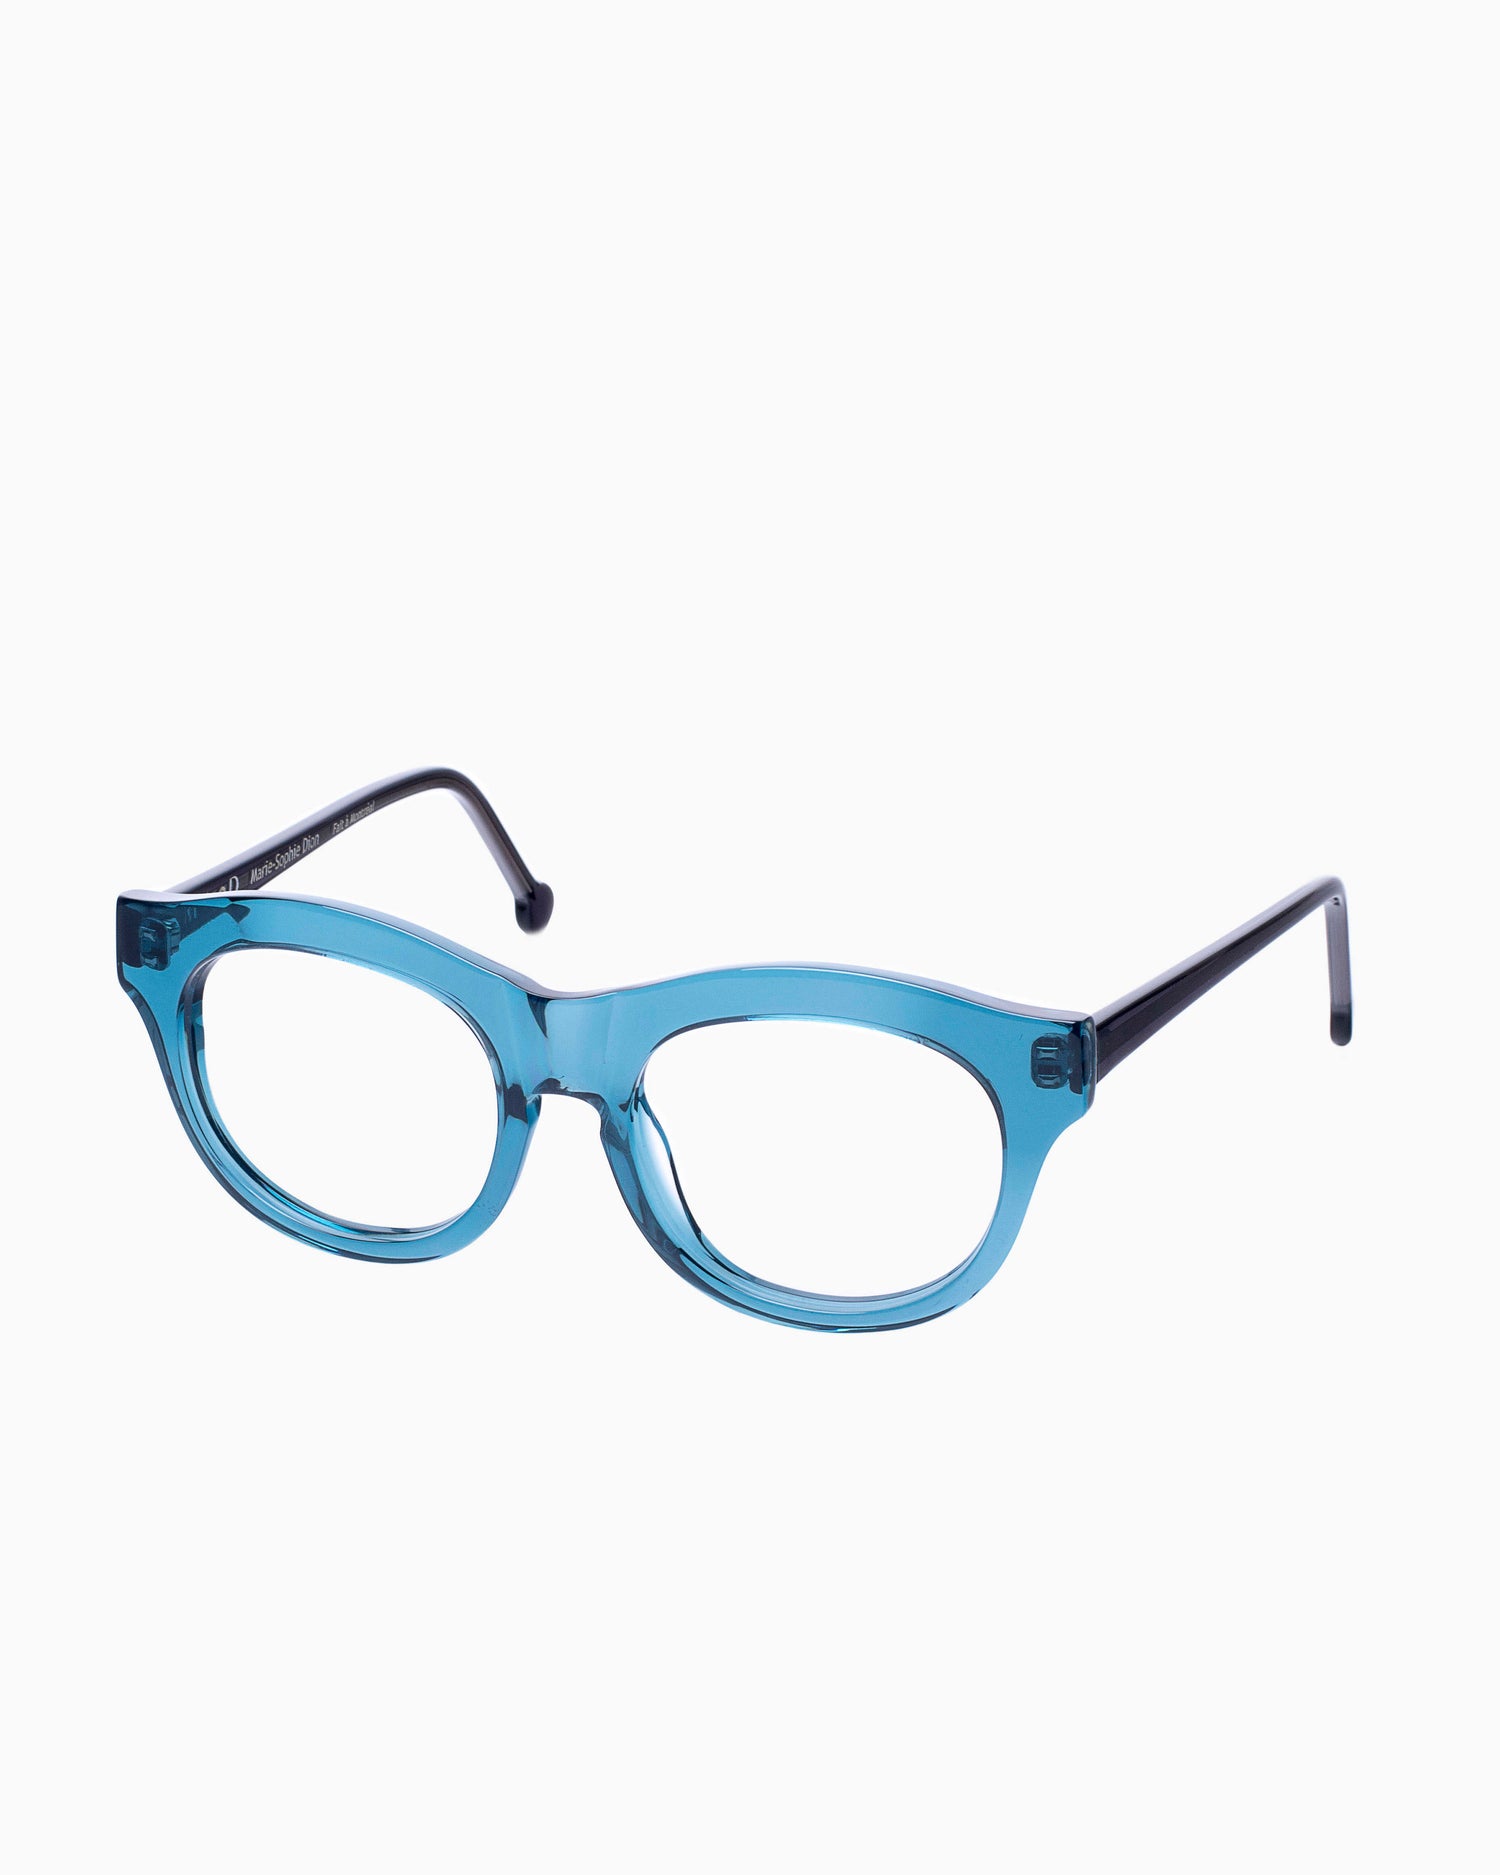 Marie-Sophie Dion - Carette - Blu | Bar à lunettes:  Marie-Sophie Dion